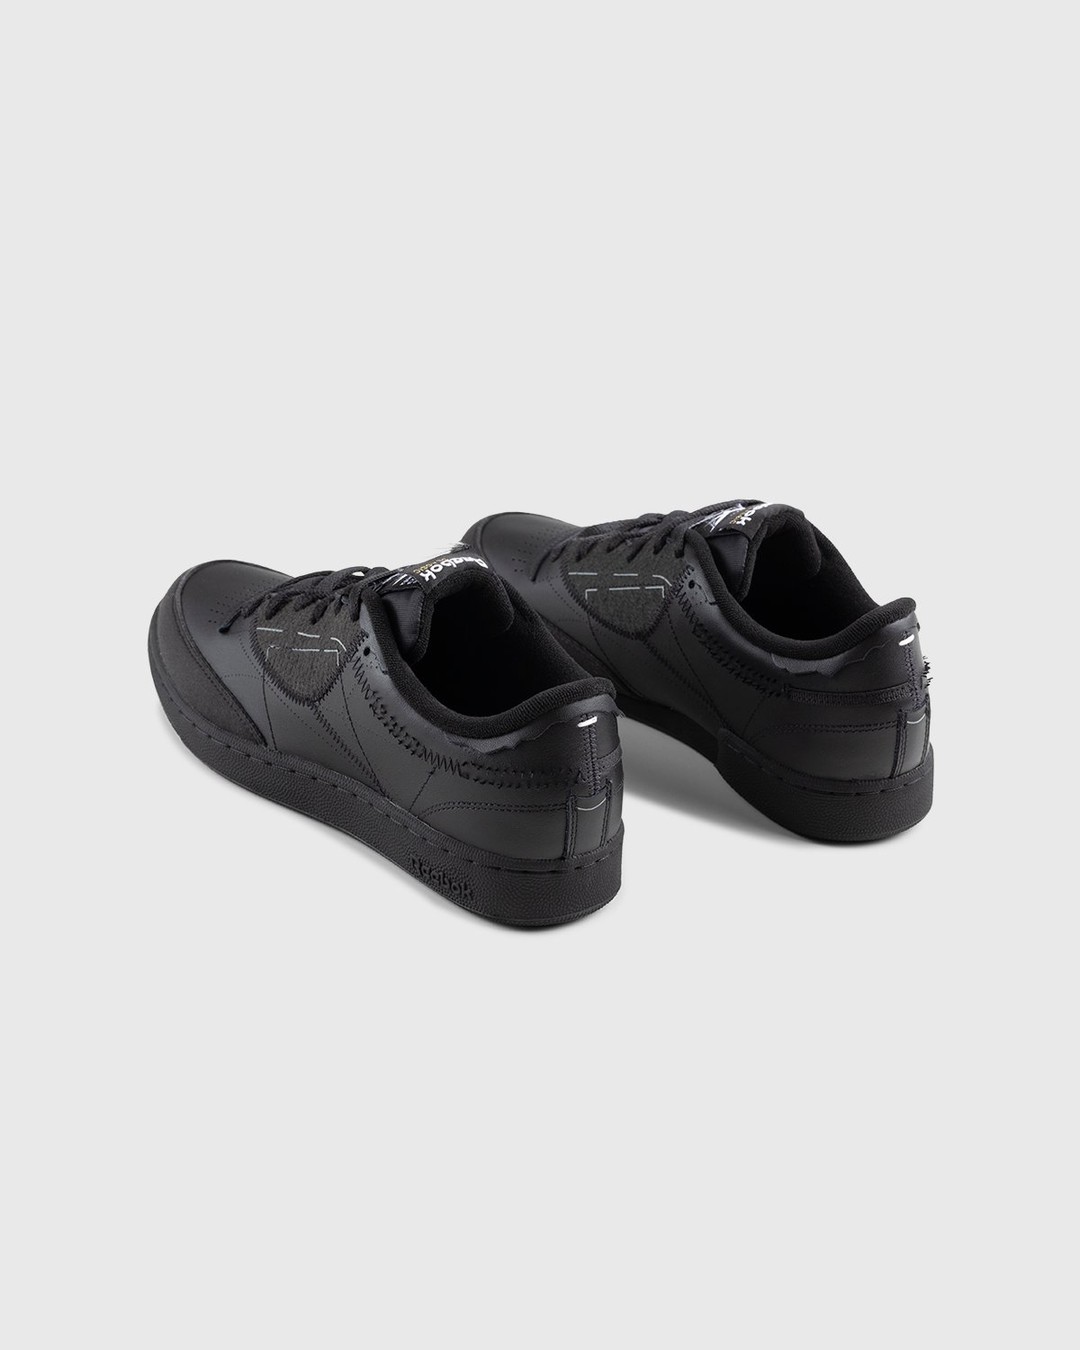 Maison Margiela x Reebok – Club C Memory Of Black/Footwear White/Black - Low Top Sneakers - Black - Image 5